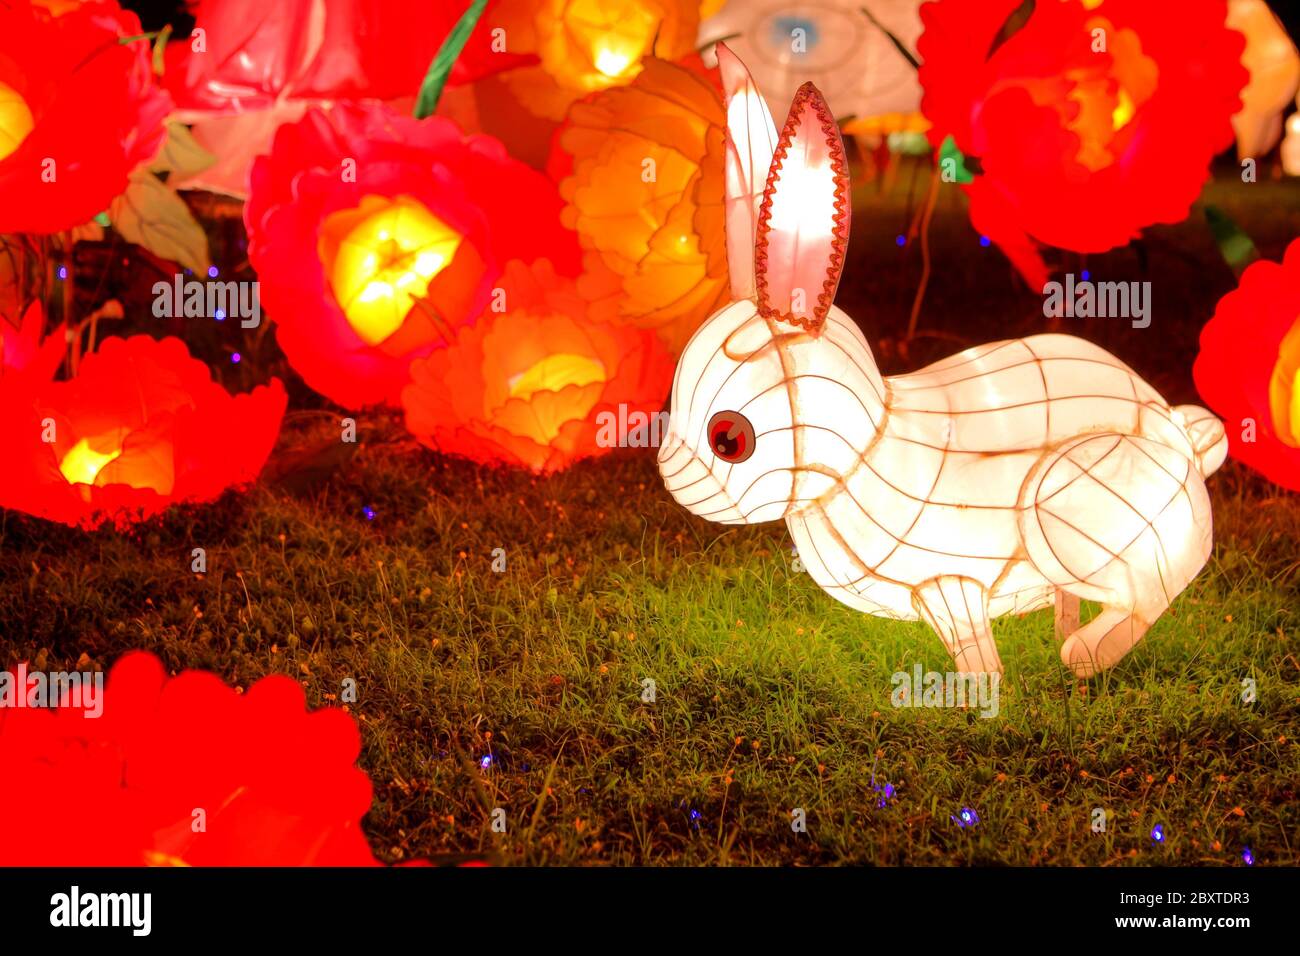 Lanterne de lapin pour le festival chinois de la mi-automne Banque D'Images